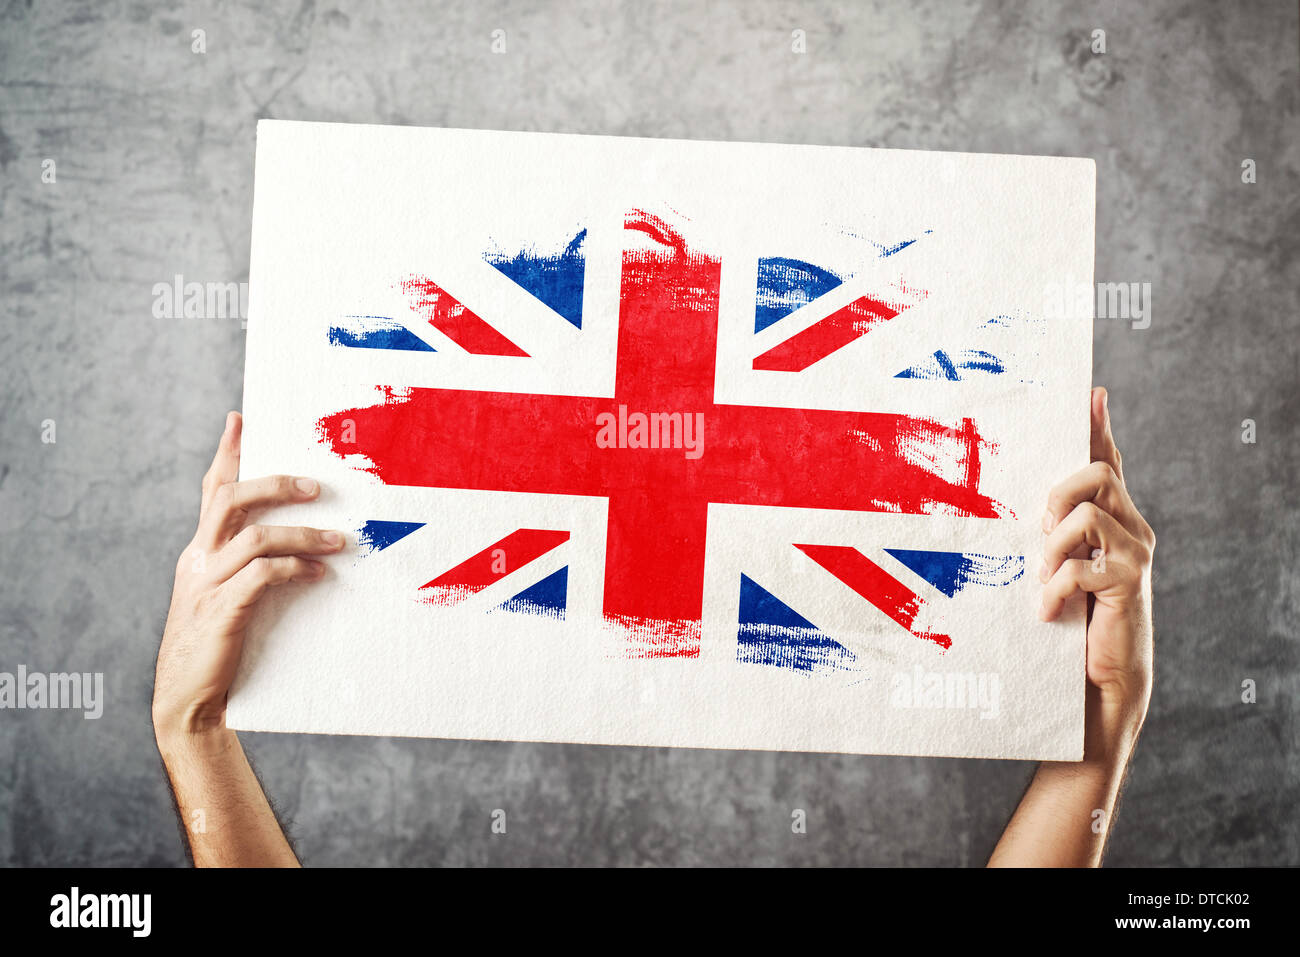 Großbritannien-Flagge. Mann, der Banner mit britischer Flagge hält. Nationalmannschaft, Patriotismus Konzept zu unterstützen. Stockfoto